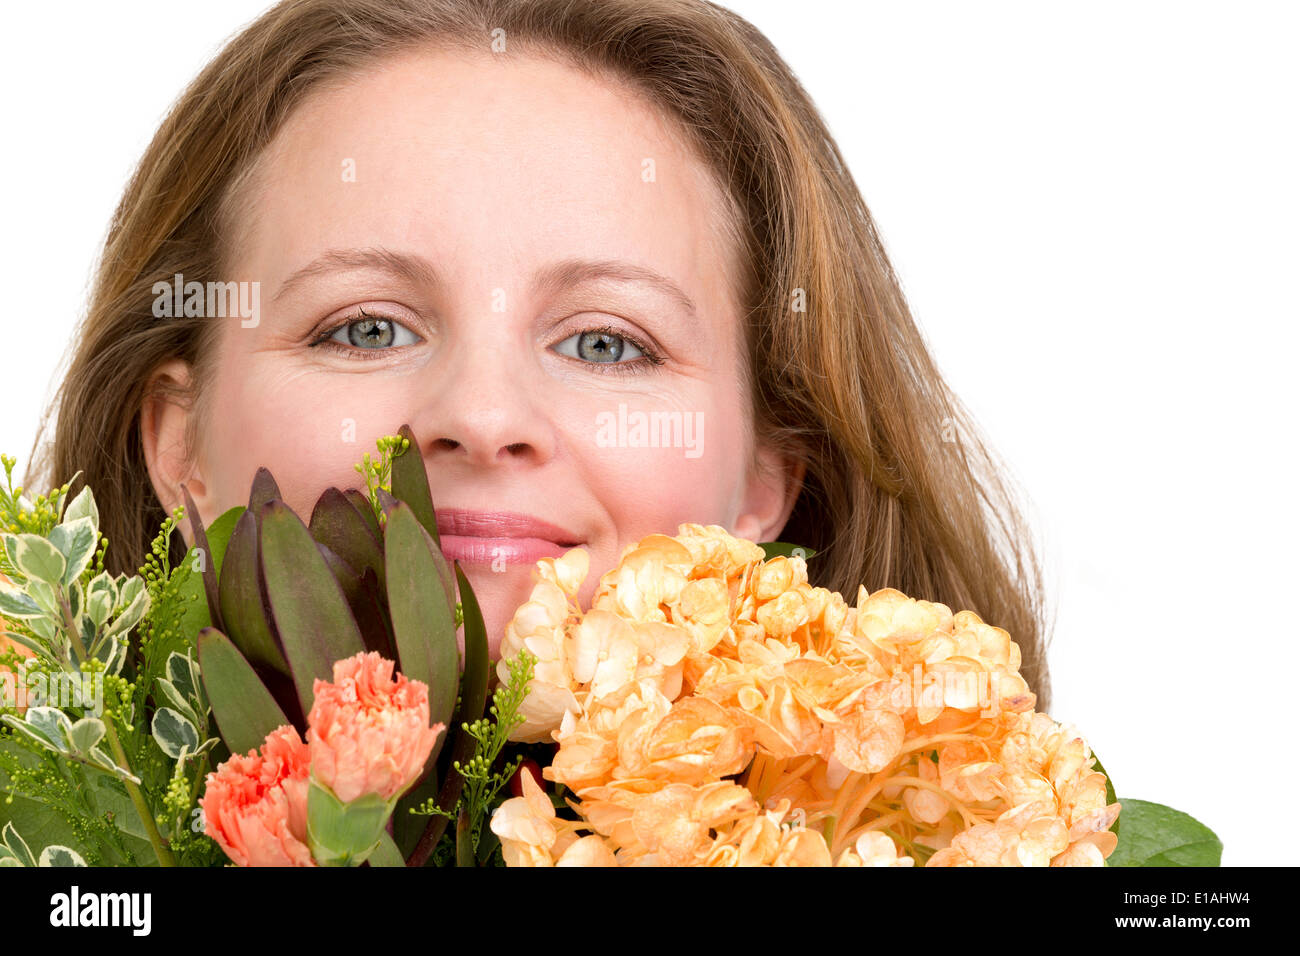 Felice donna sorridente dietro il mazzo di fiori che esprime i suoi sentimenti realmente, isolato su bianco Foto Stock